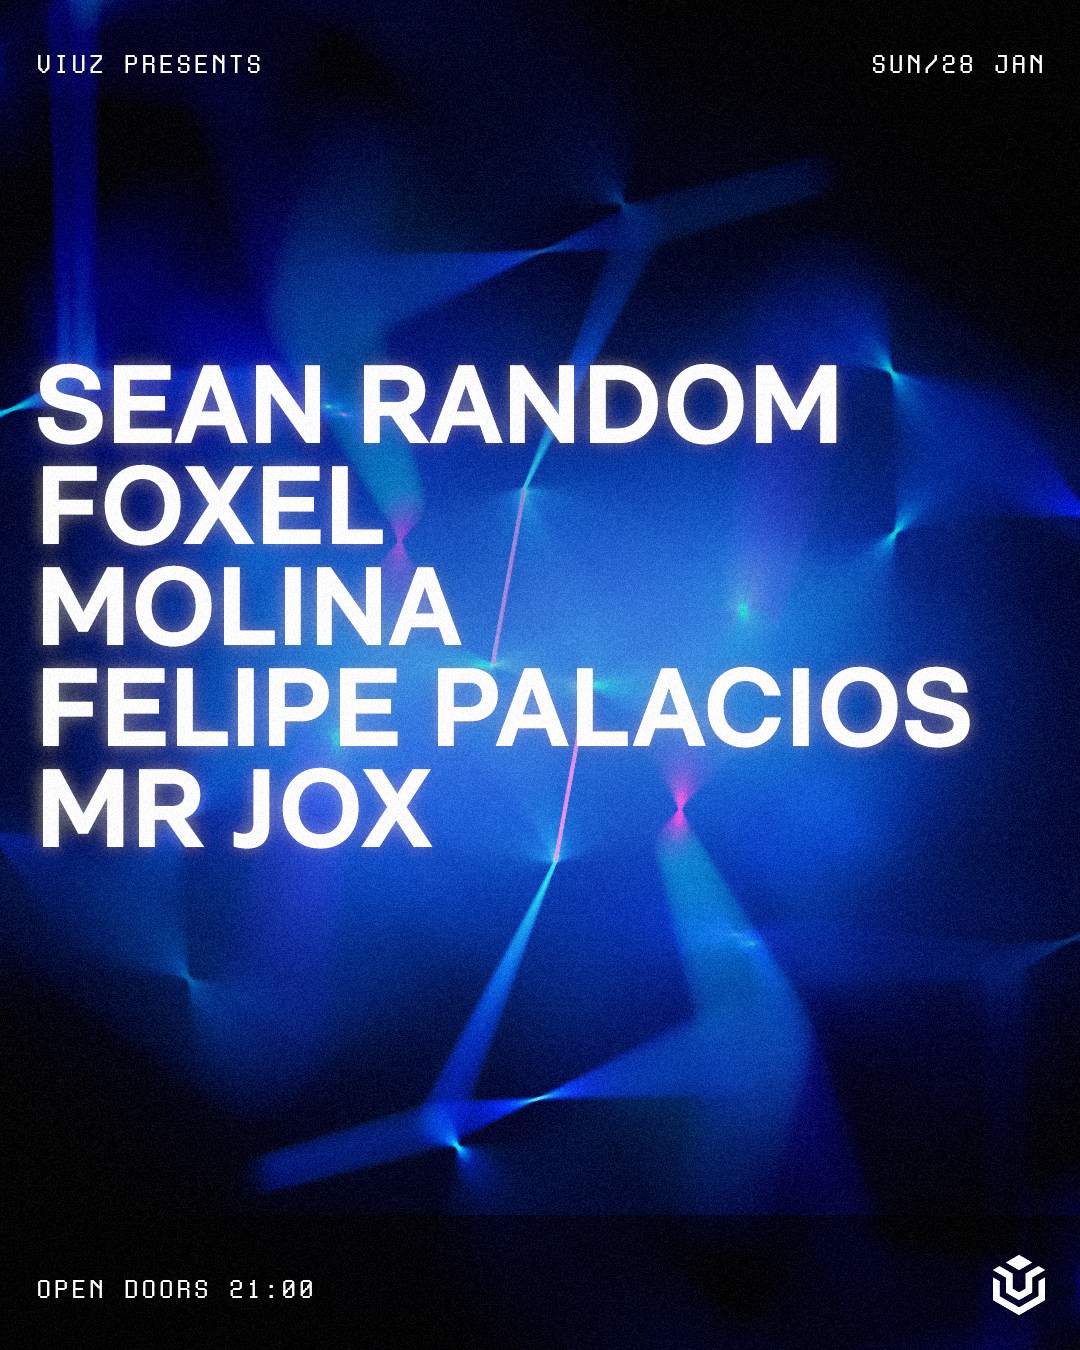 Sean Random, Foxel, Molina, Felipe Palacios, Mr jox - フライヤー表